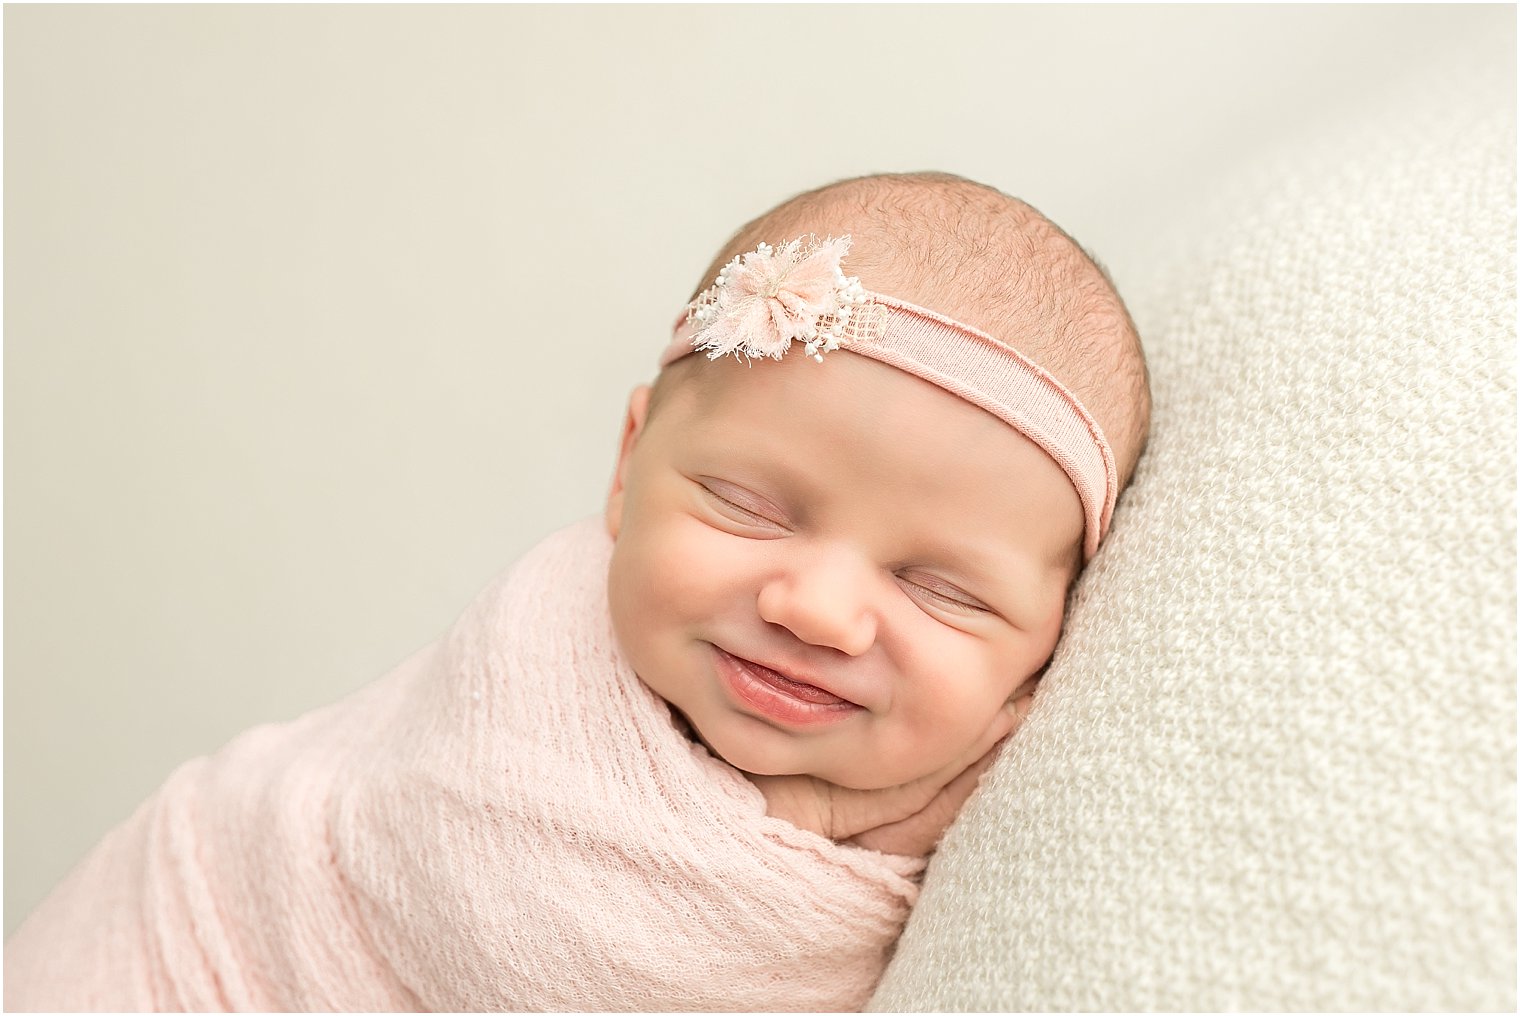 Smiling newborn photo